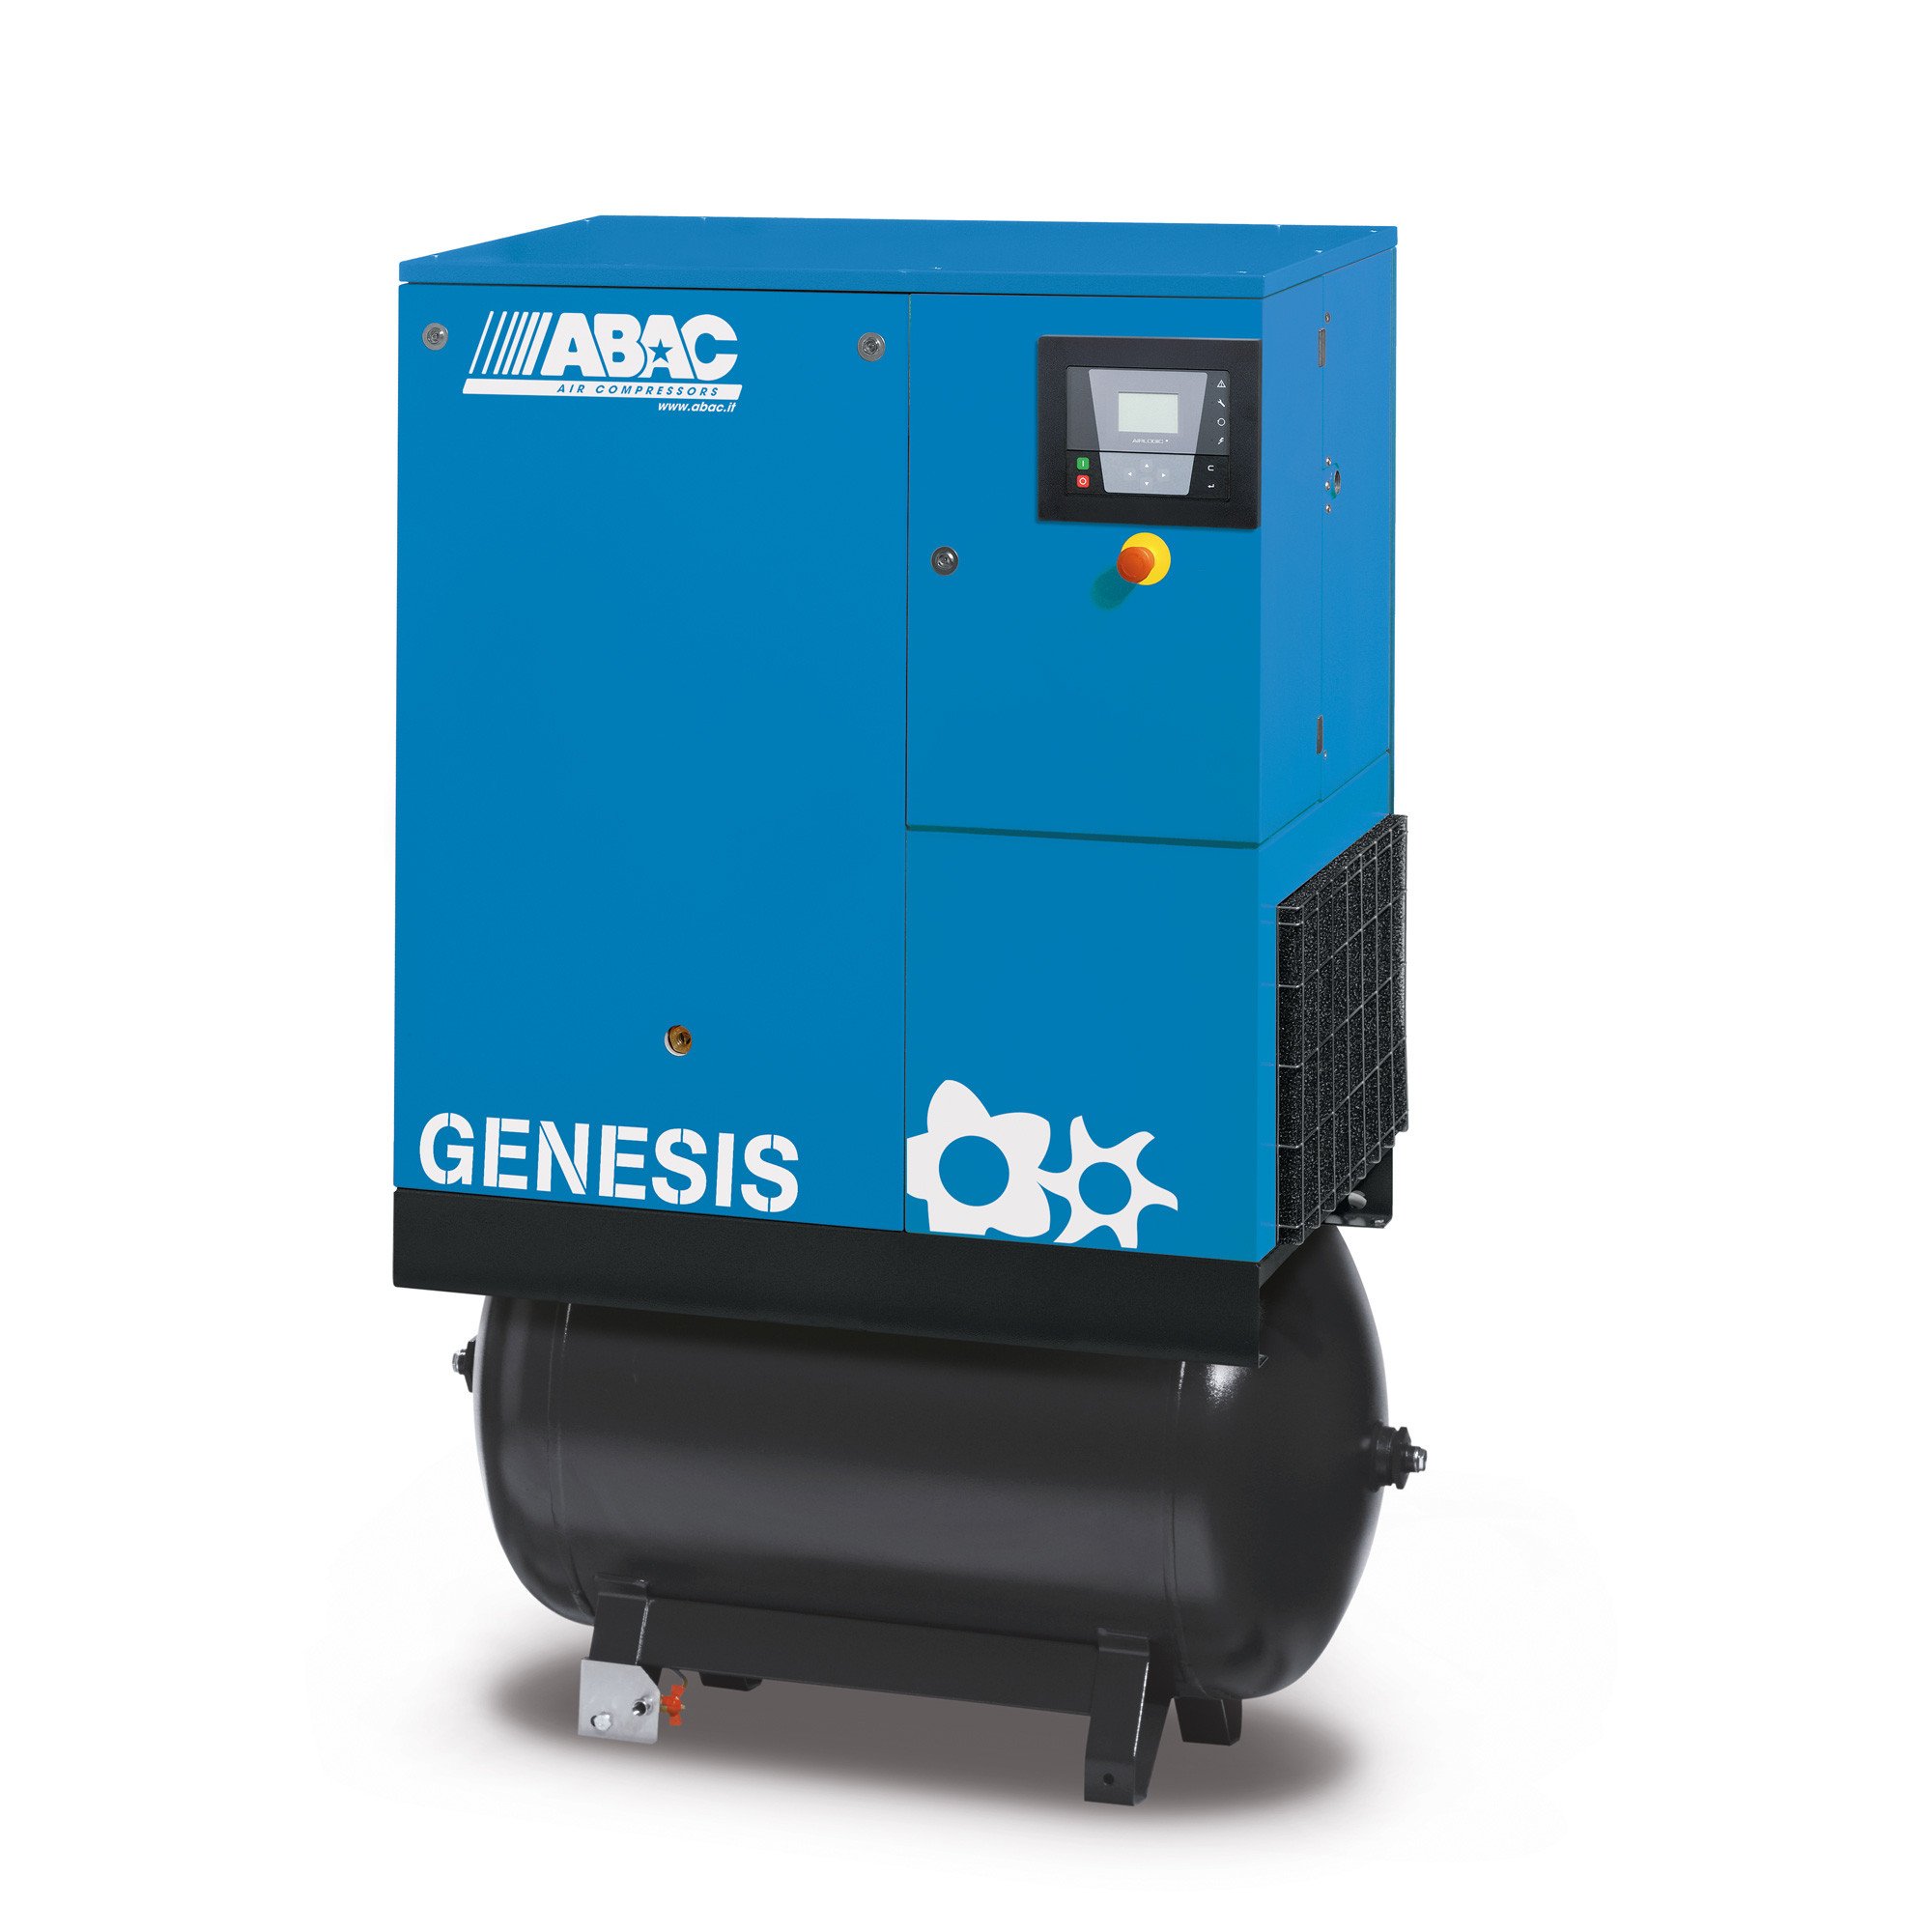 ABAC Genesis 270L, 29.31 CFM, 7.5 kW定速螺杆空压机